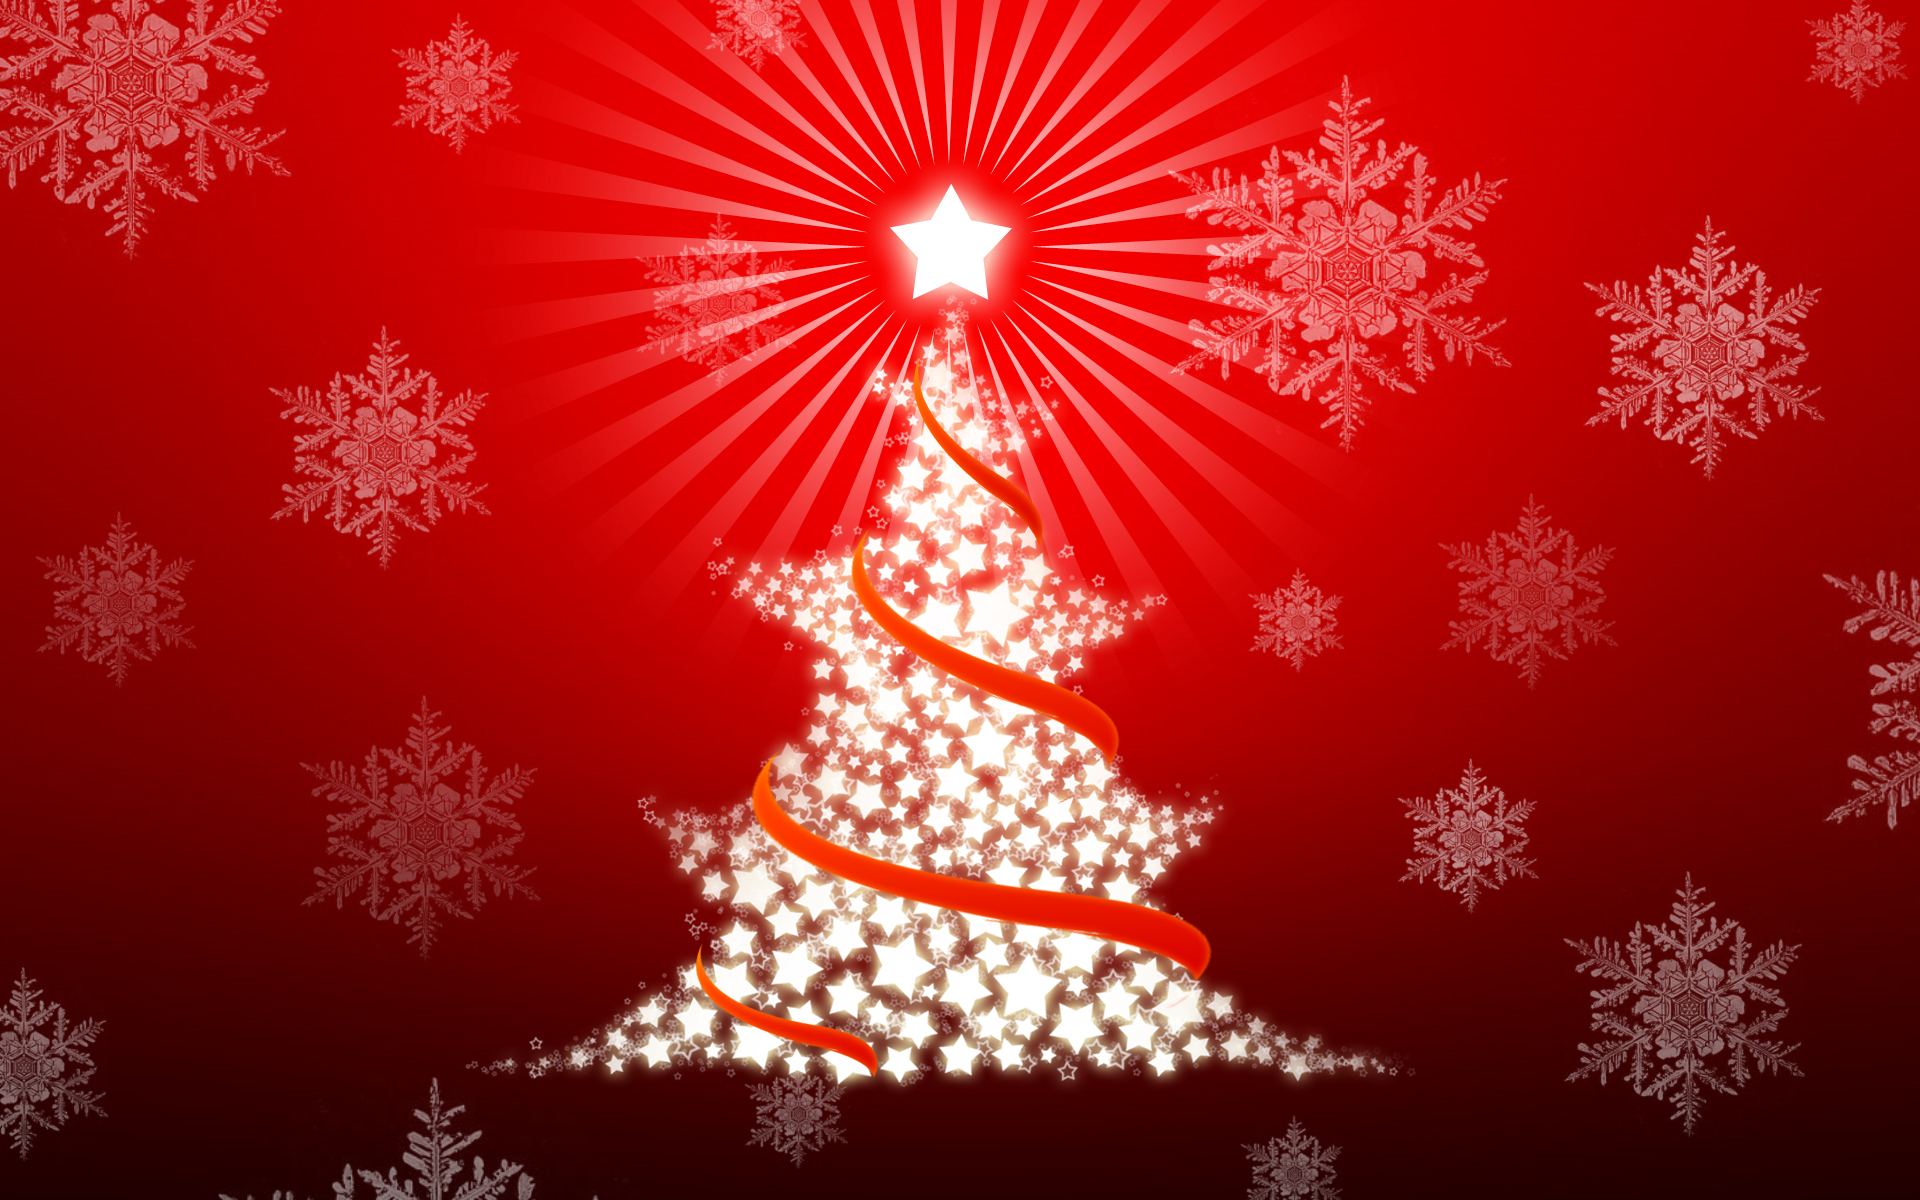 كولكشن صور شجرة الكريسماس 2014 christmas tree decorating ideas